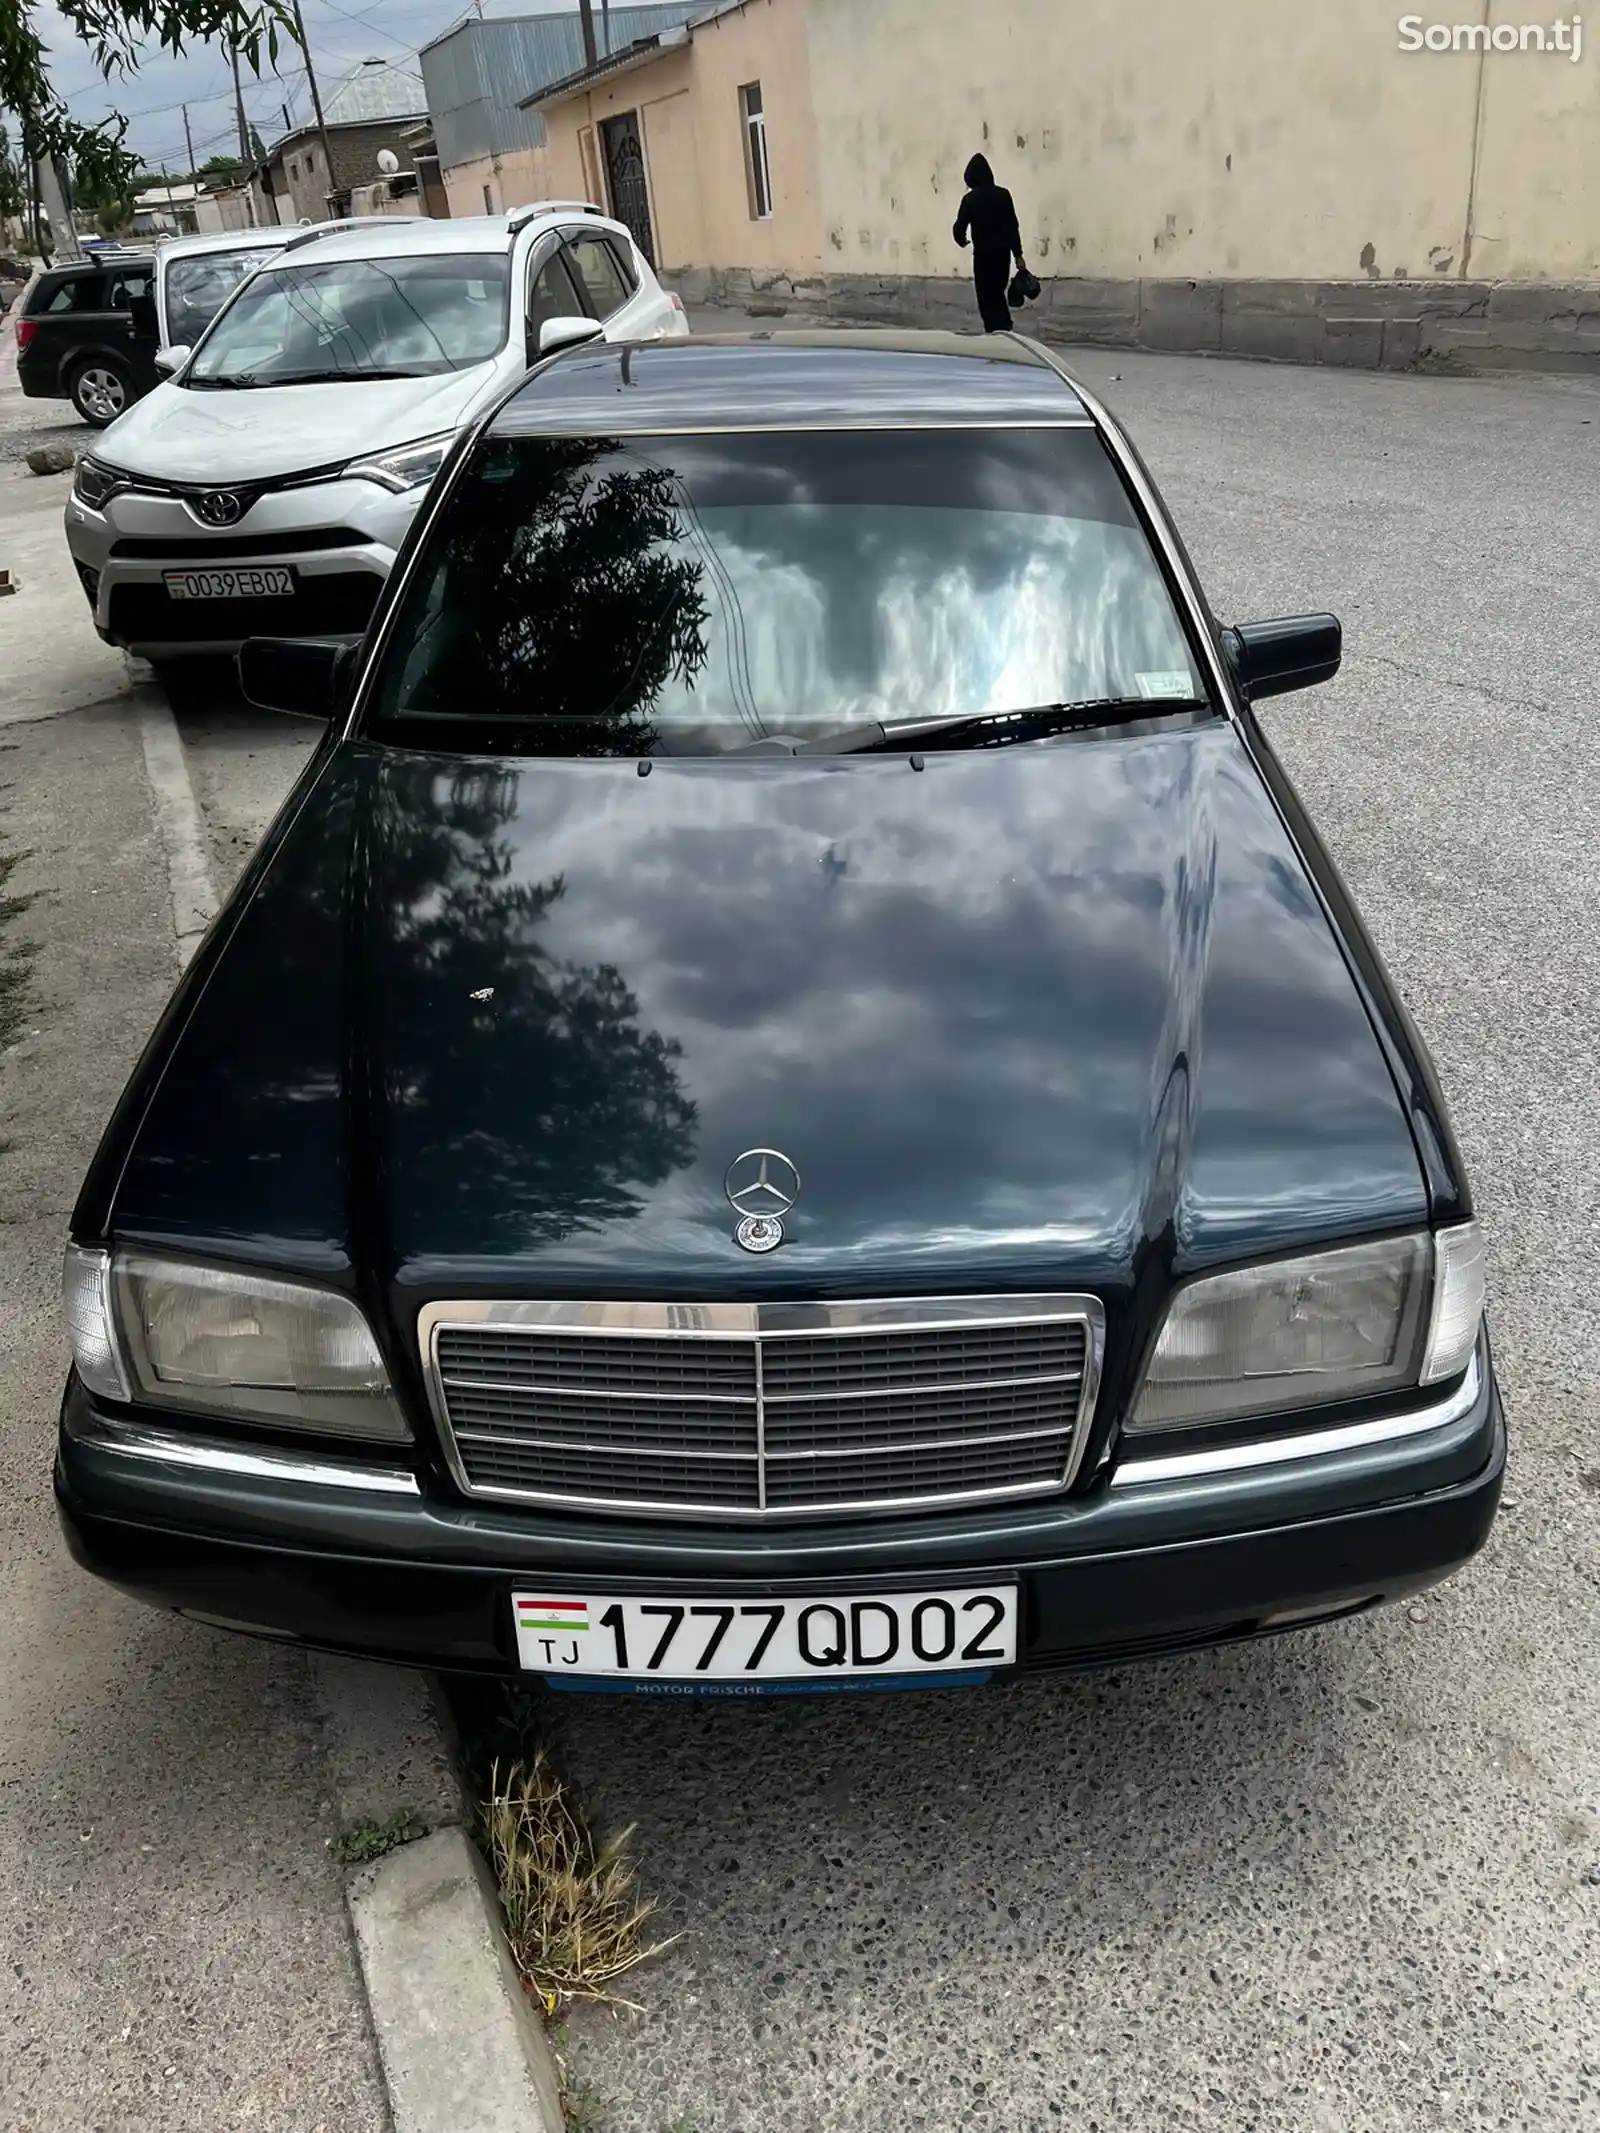 Mercedes-Benz C class, 1996-1